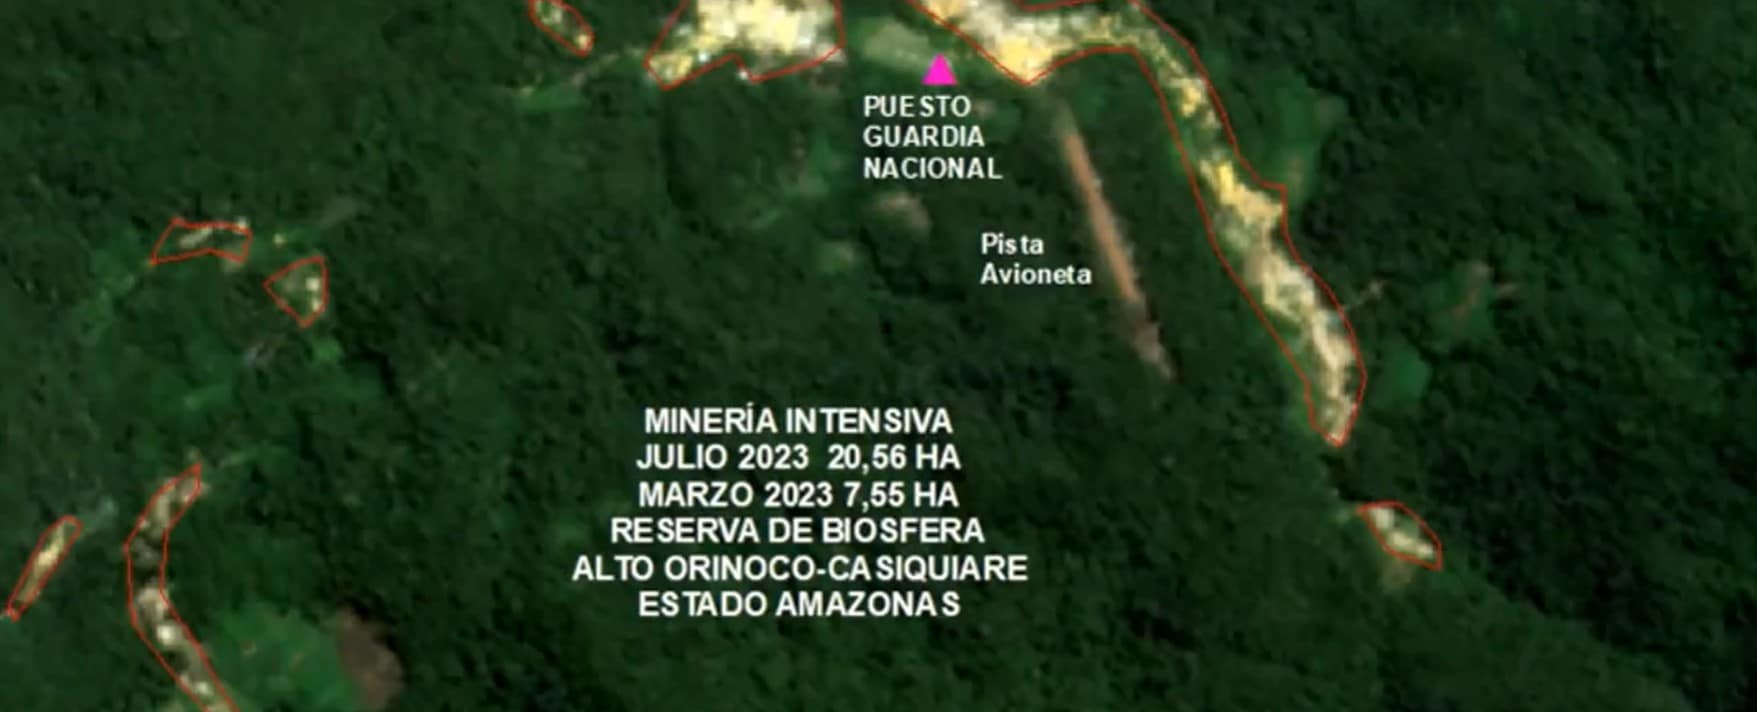 Imágenes satelitales demuestran la falsedad de la operación contra la minería ilegal de Maduro en el Alto Orinoco